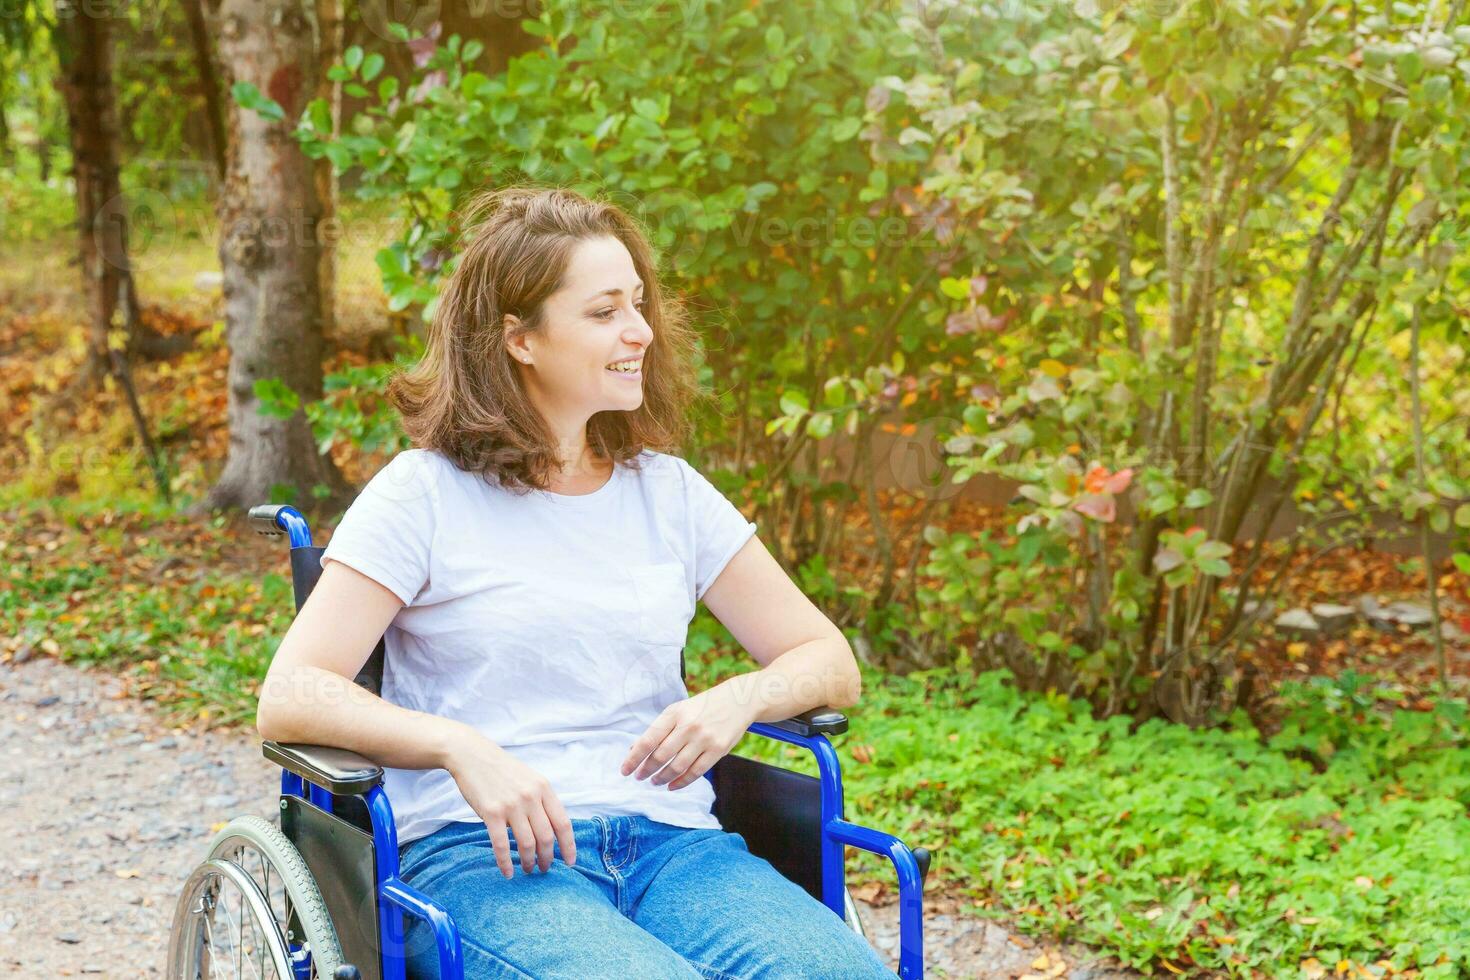 jeune femme handicapée heureuse en fauteuil roulant sur la route dans le parc de l'hôpital en attente de services aux patients. fille paralysée dans une chaise invalide pour personnes handicapées en plein air dans la nature. notion de réhabilitation. photo